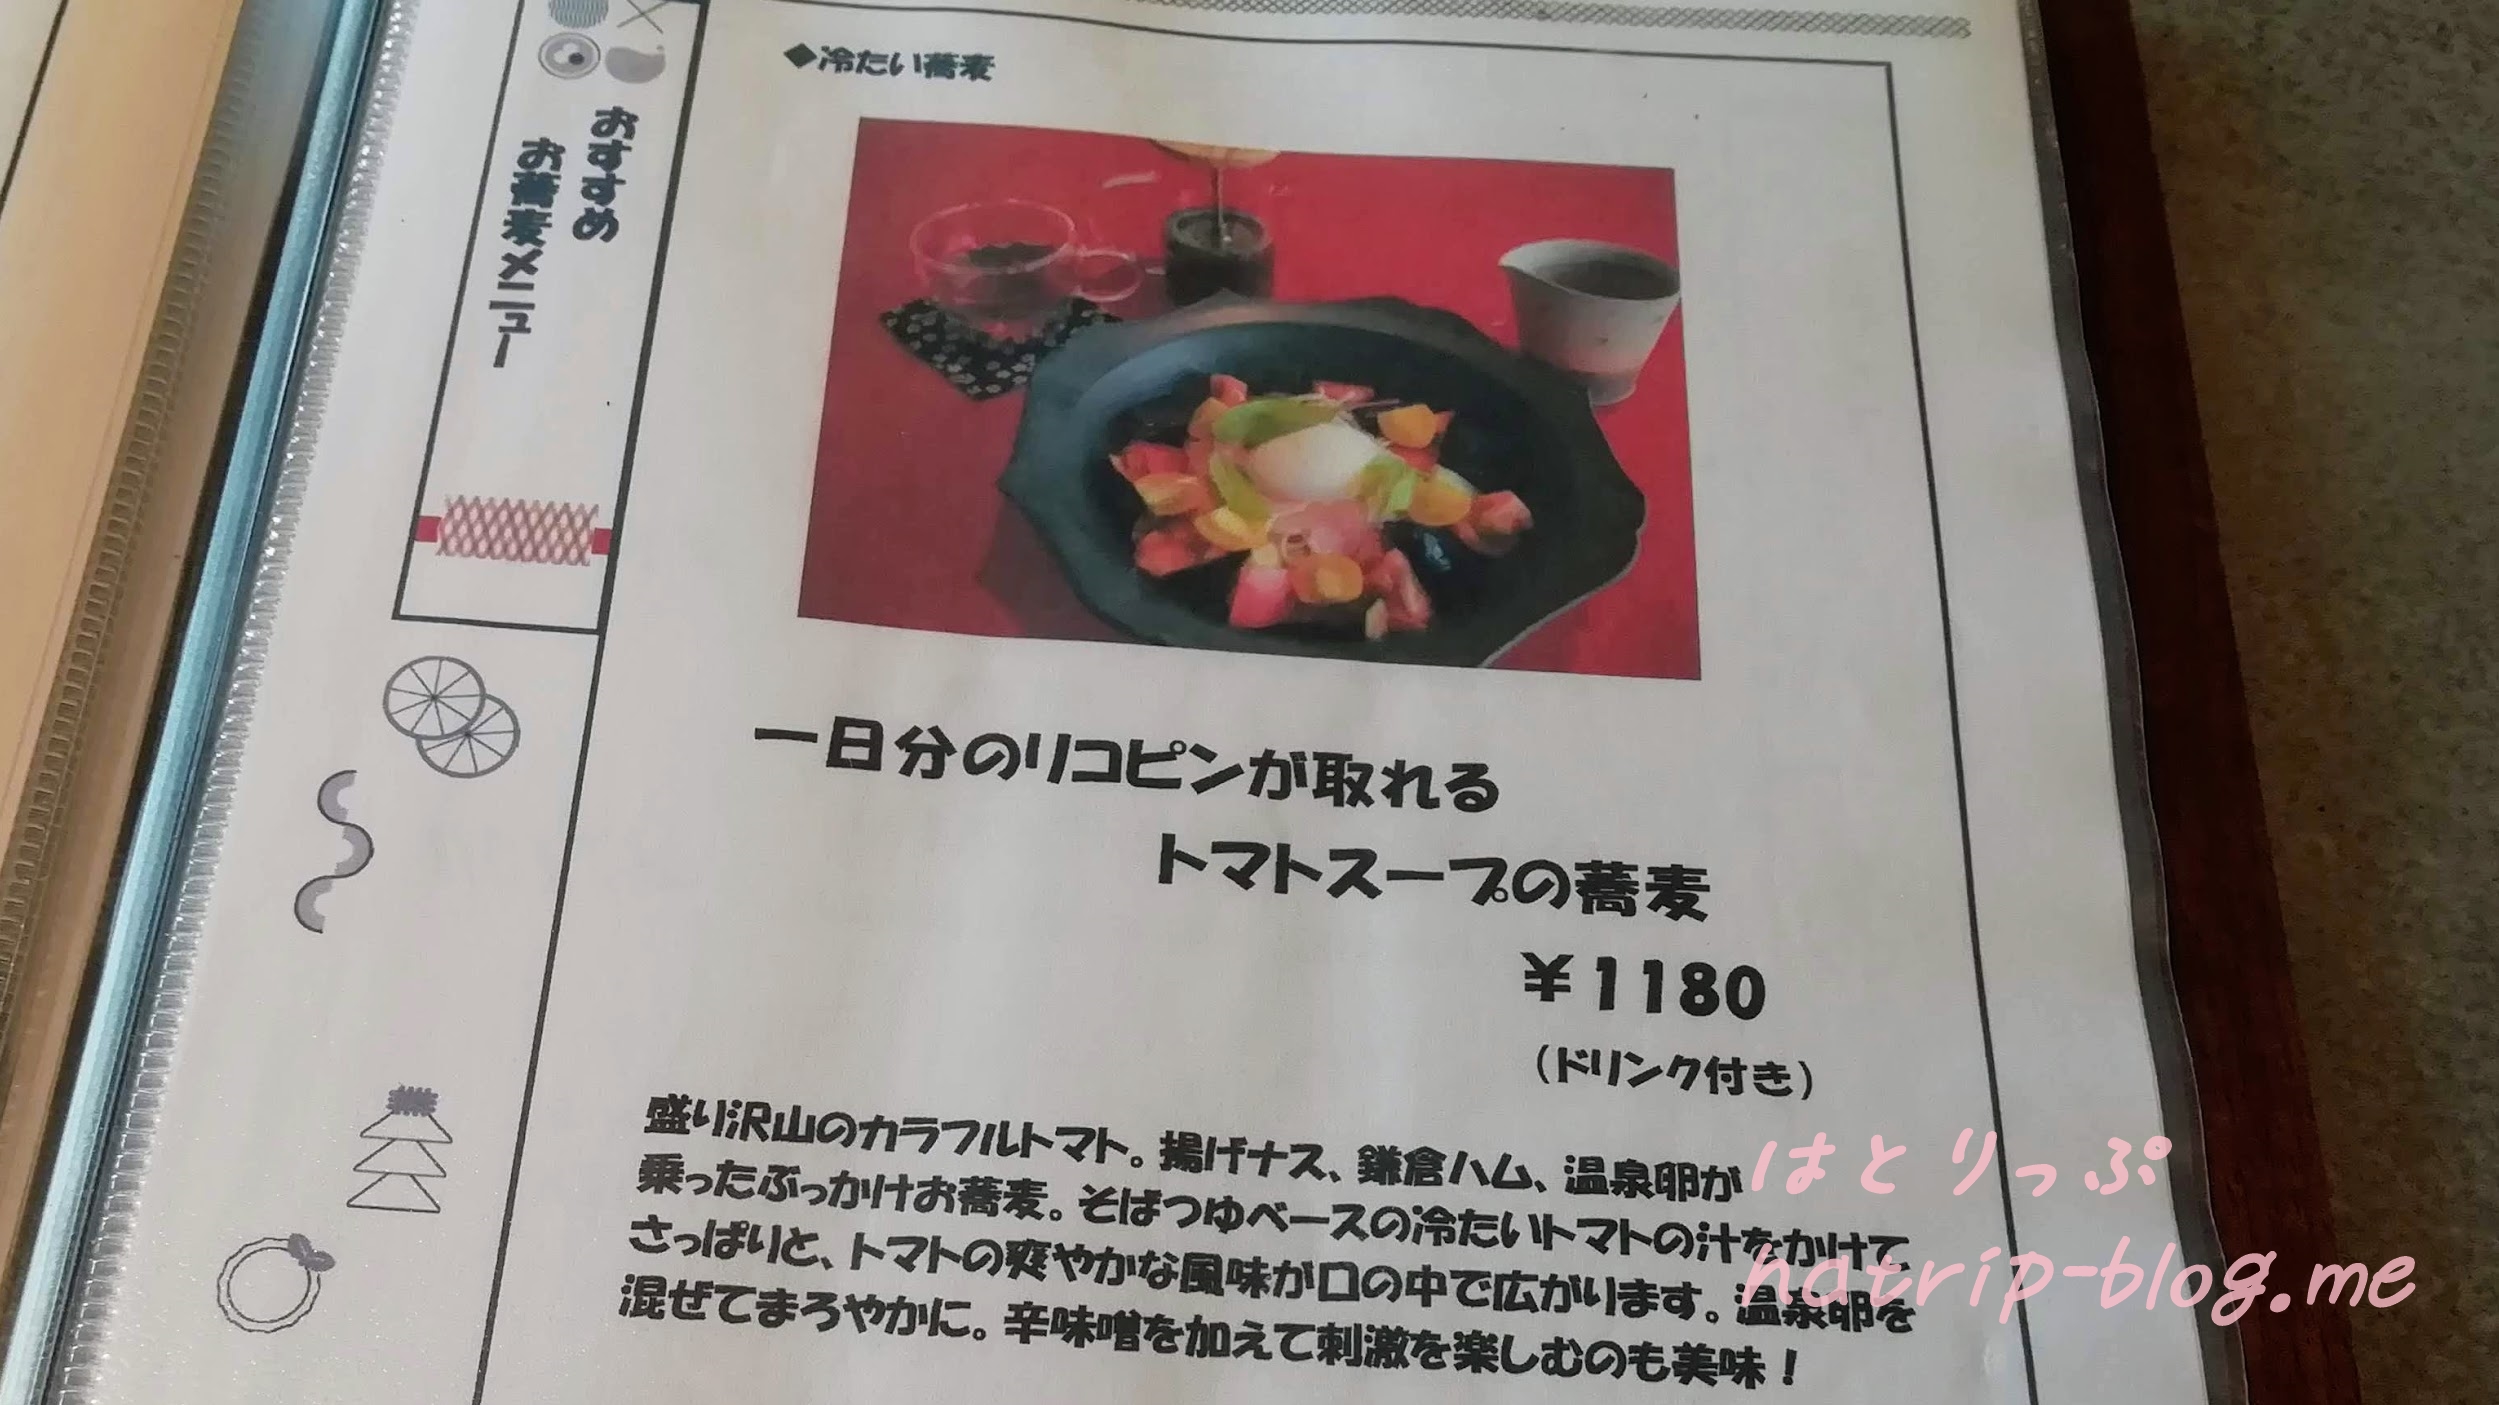 鎌倉 カフェレストラン 茶屋ひなた メニュー 1日分のリコピンが摂れるトマトスープの蕎麦